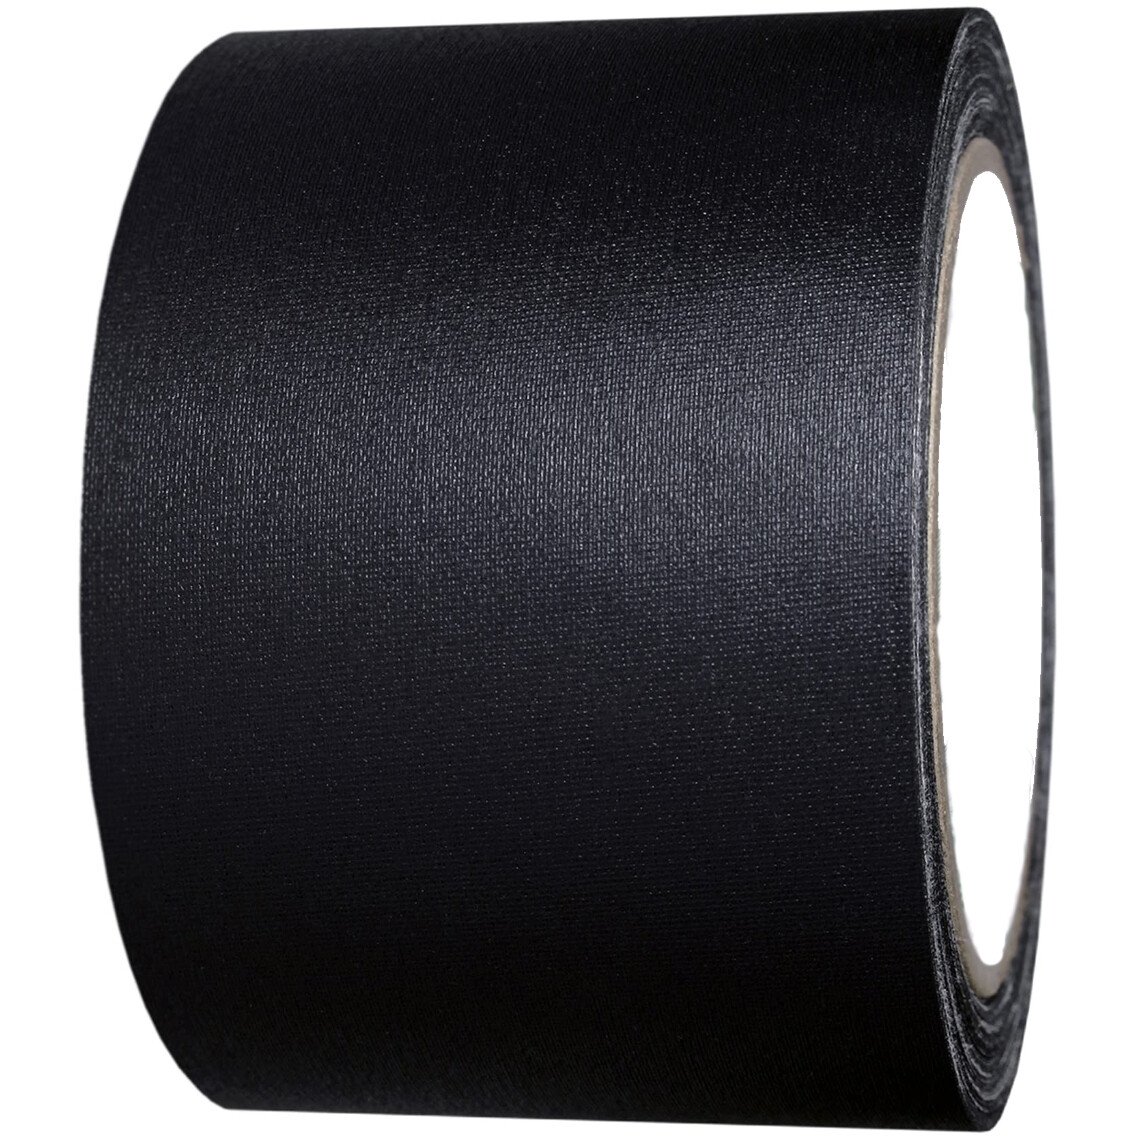 Lawson-HIS TCB Waterproof Cloth Tape 3" 72mm x 50Mtr (Gaffa Duct Tape) - Black